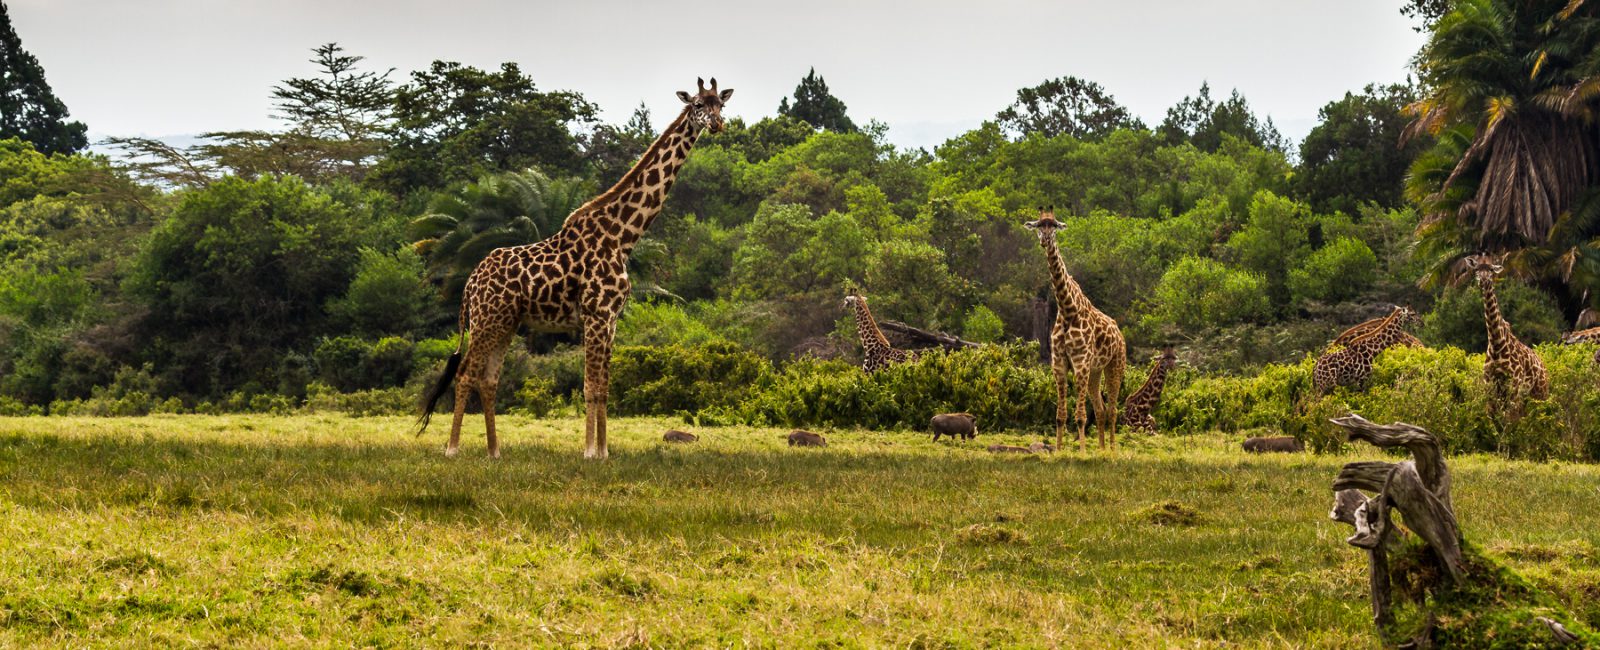 Fotografieren auf Safari